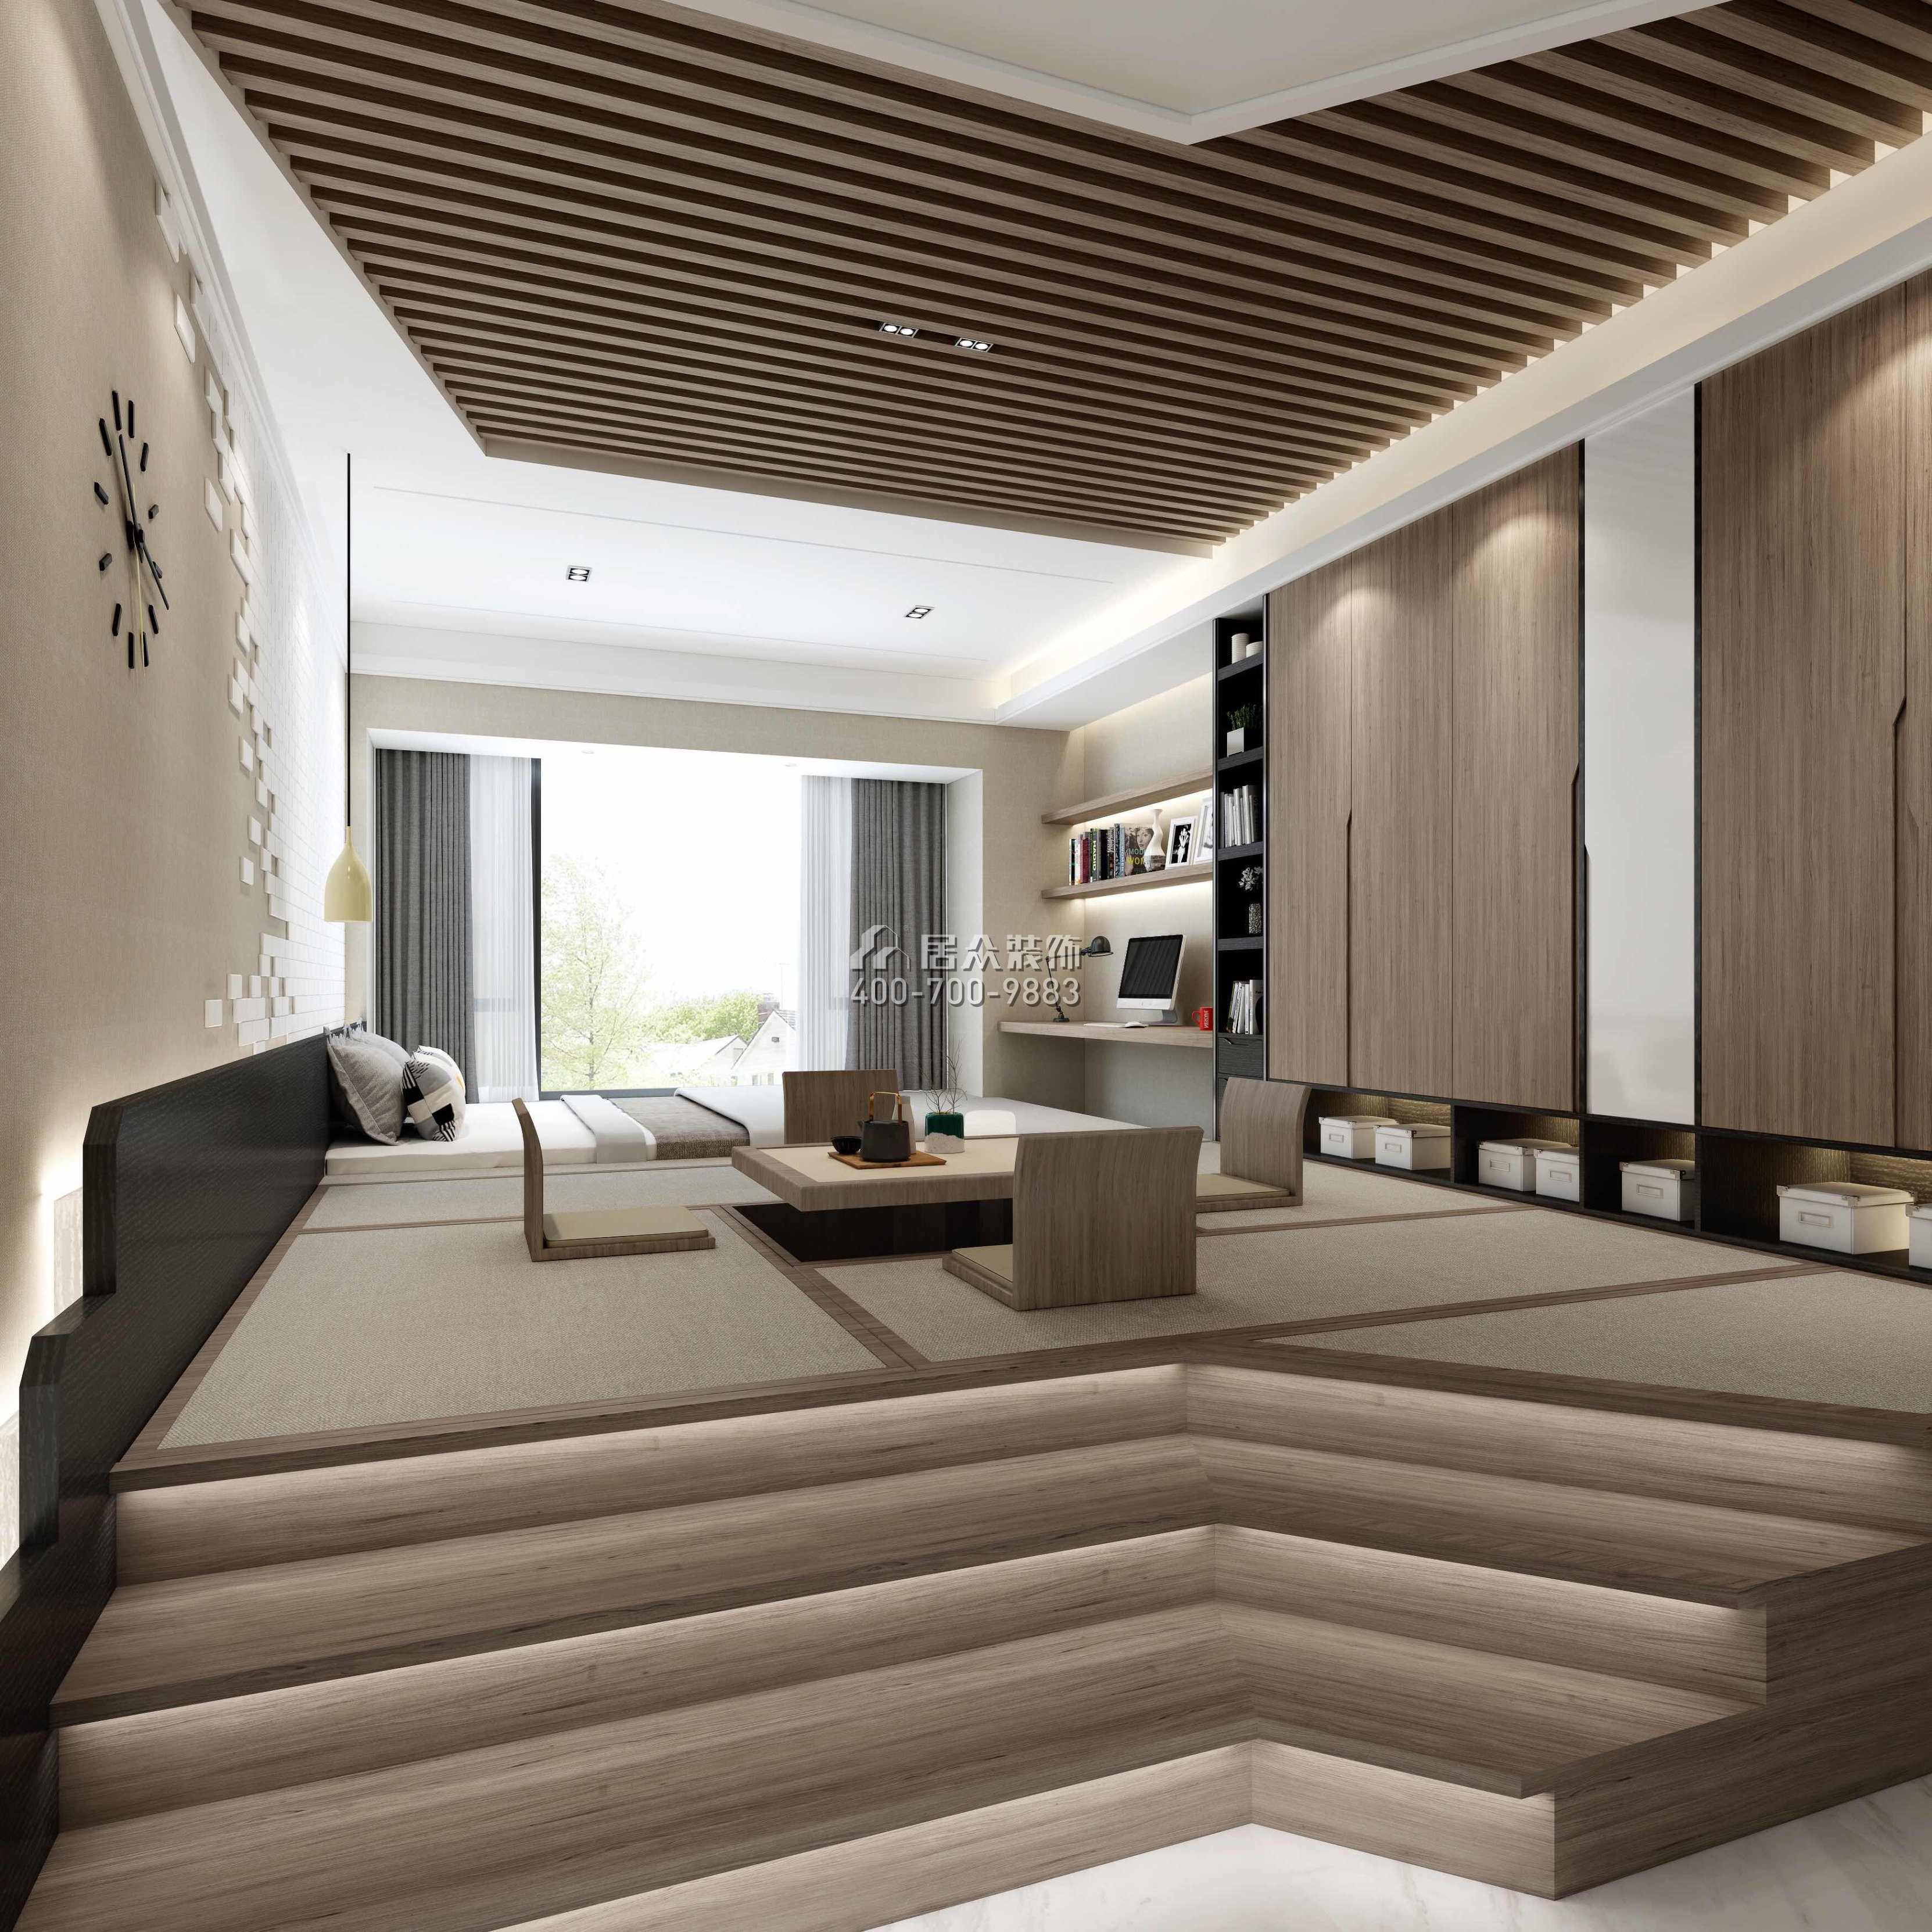 锦绣山河三期350平方米混搭风格平层户型客厅装修效果图